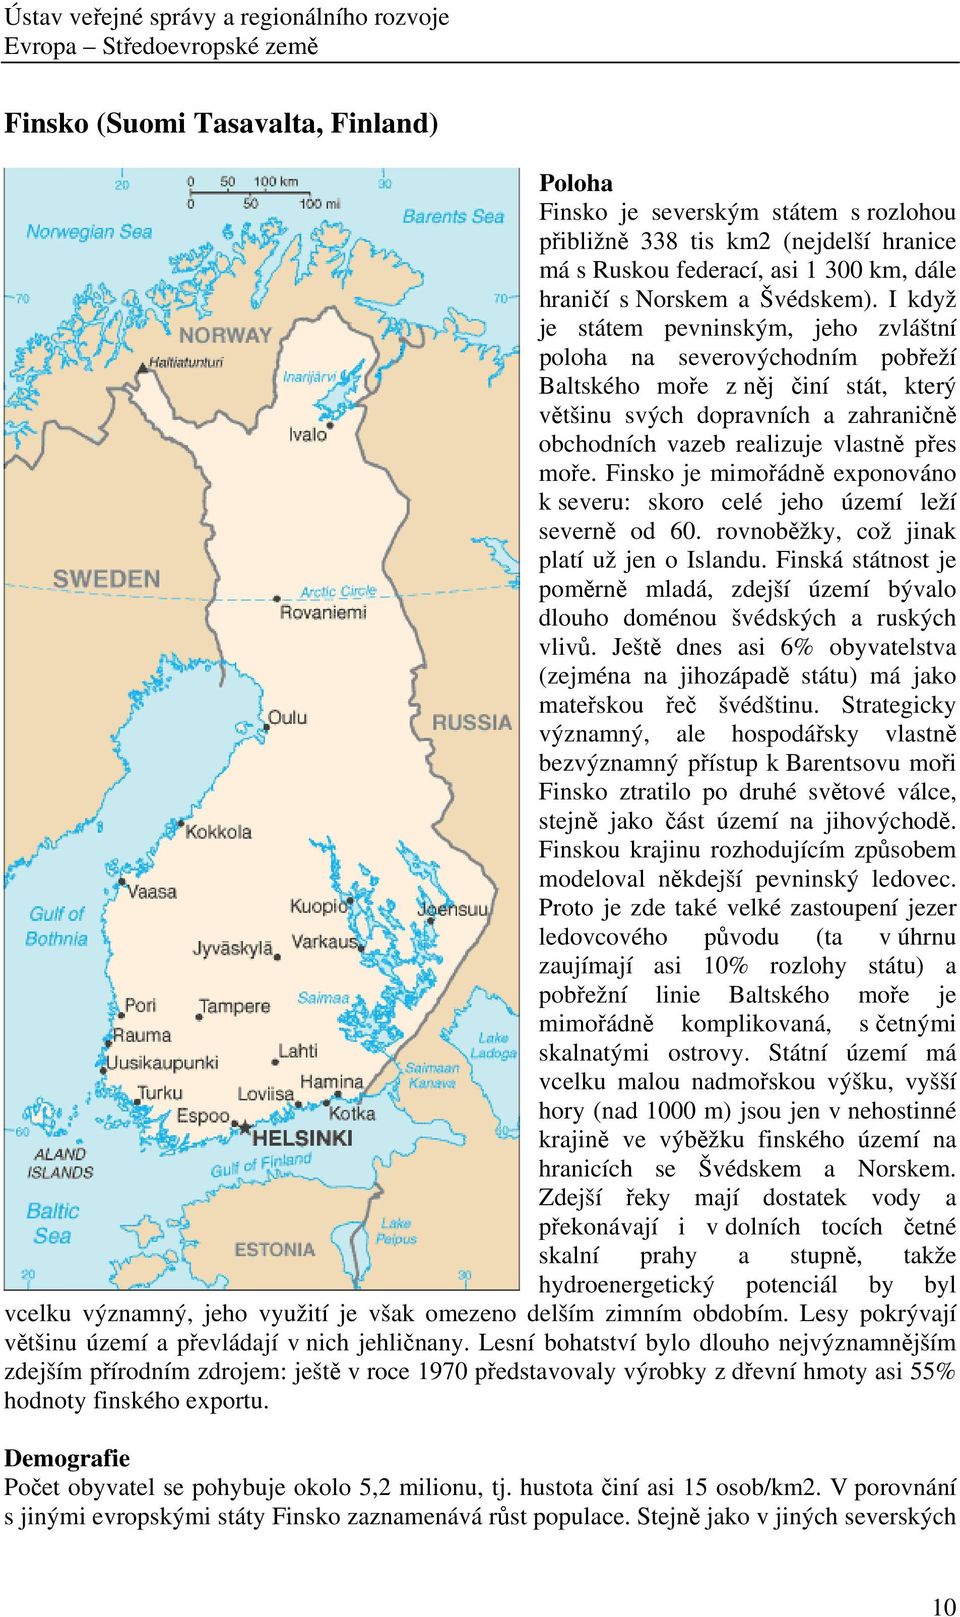 Finsko je mimořádně exponováno k severu: skoro celé jeho území leží severně od 60. rovnoběžky, což jinak platí už jen o Islandu.